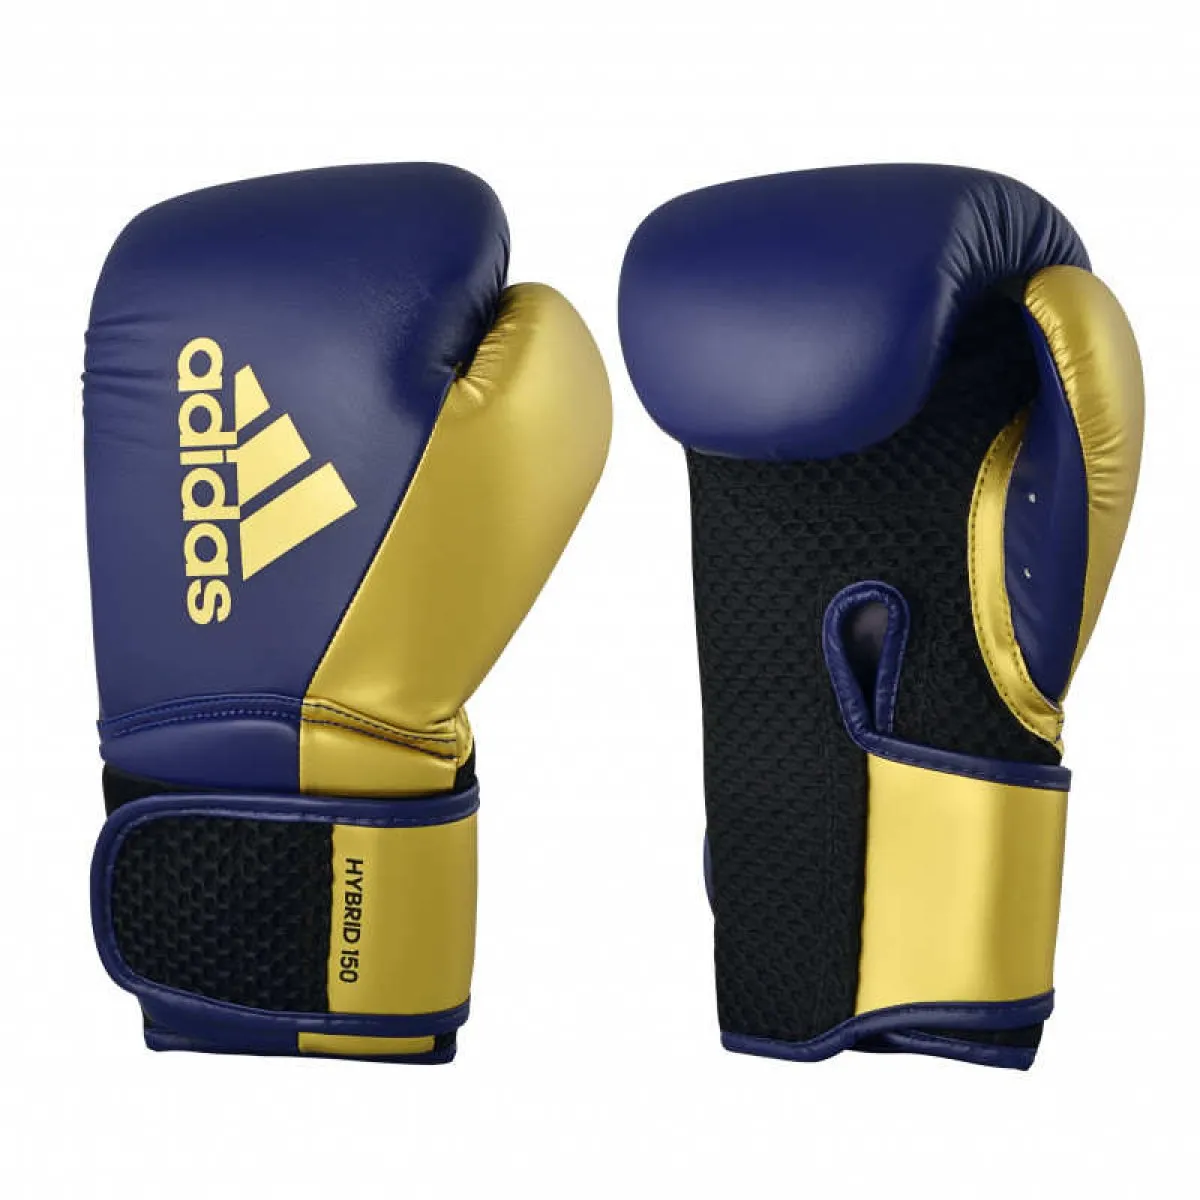 Guante de boxeo adidas Hybrid 150 azul marino/oro